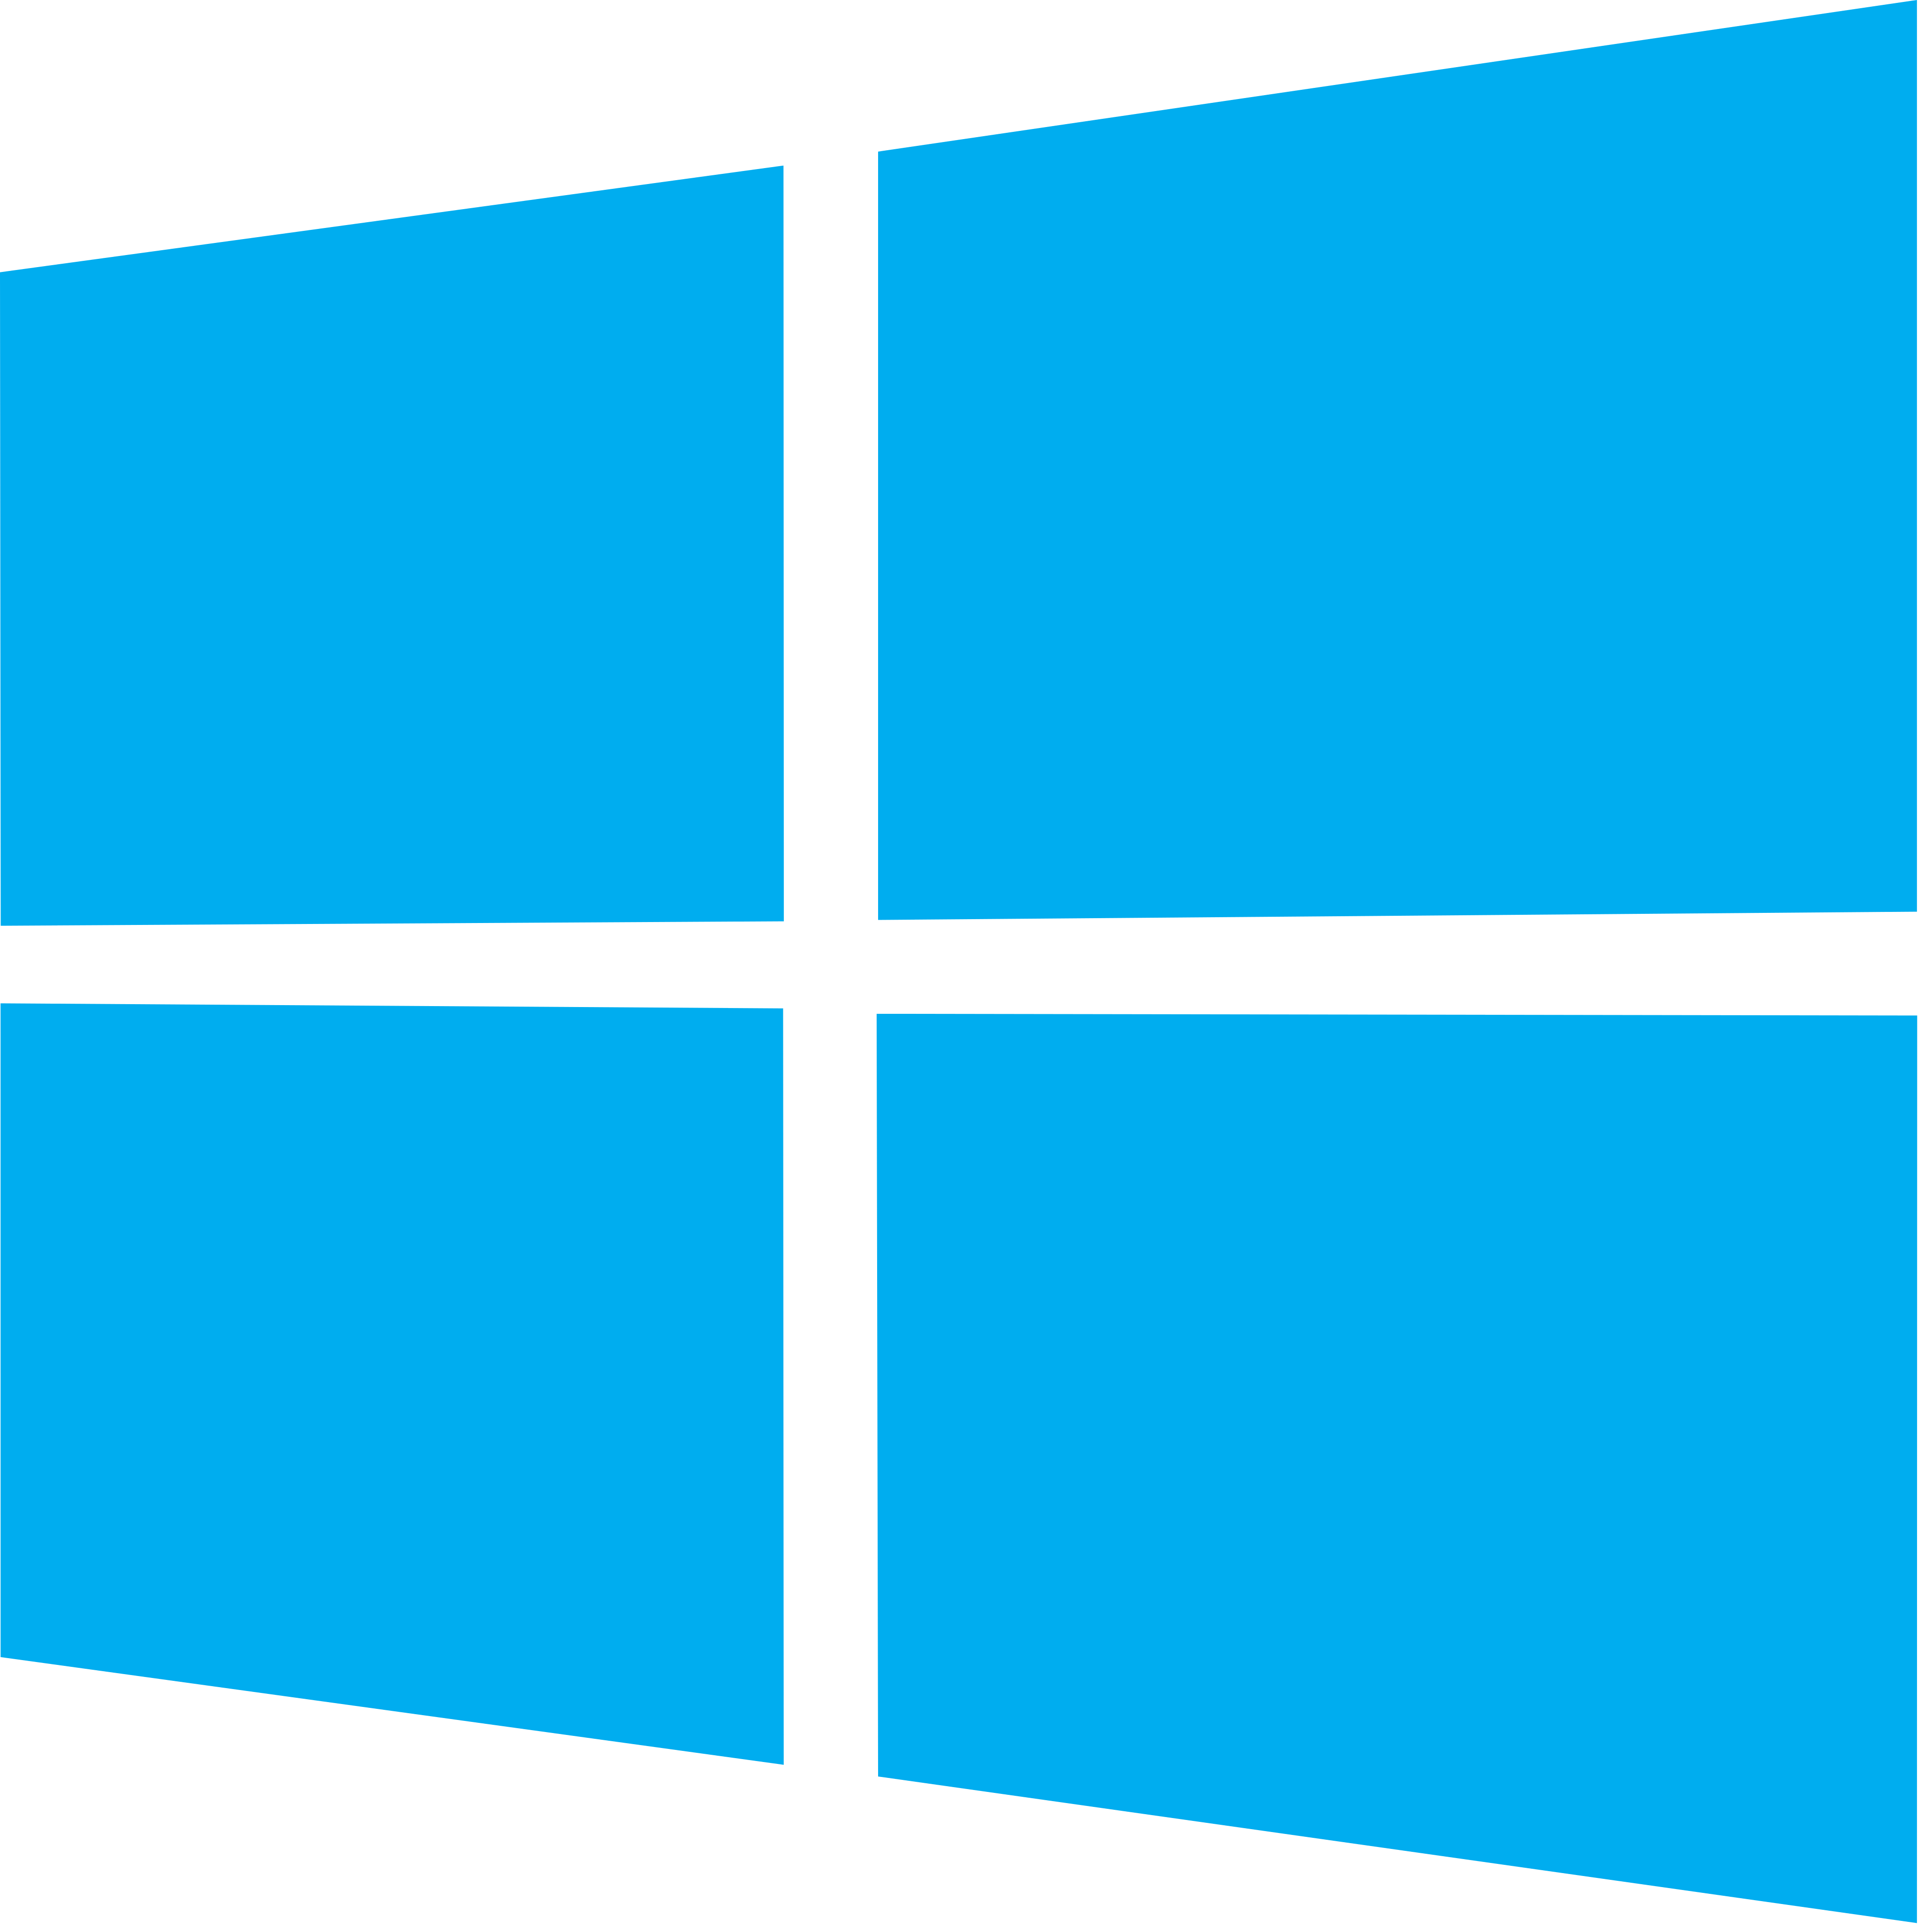 Tlcharger une copie de Windows 8 Home